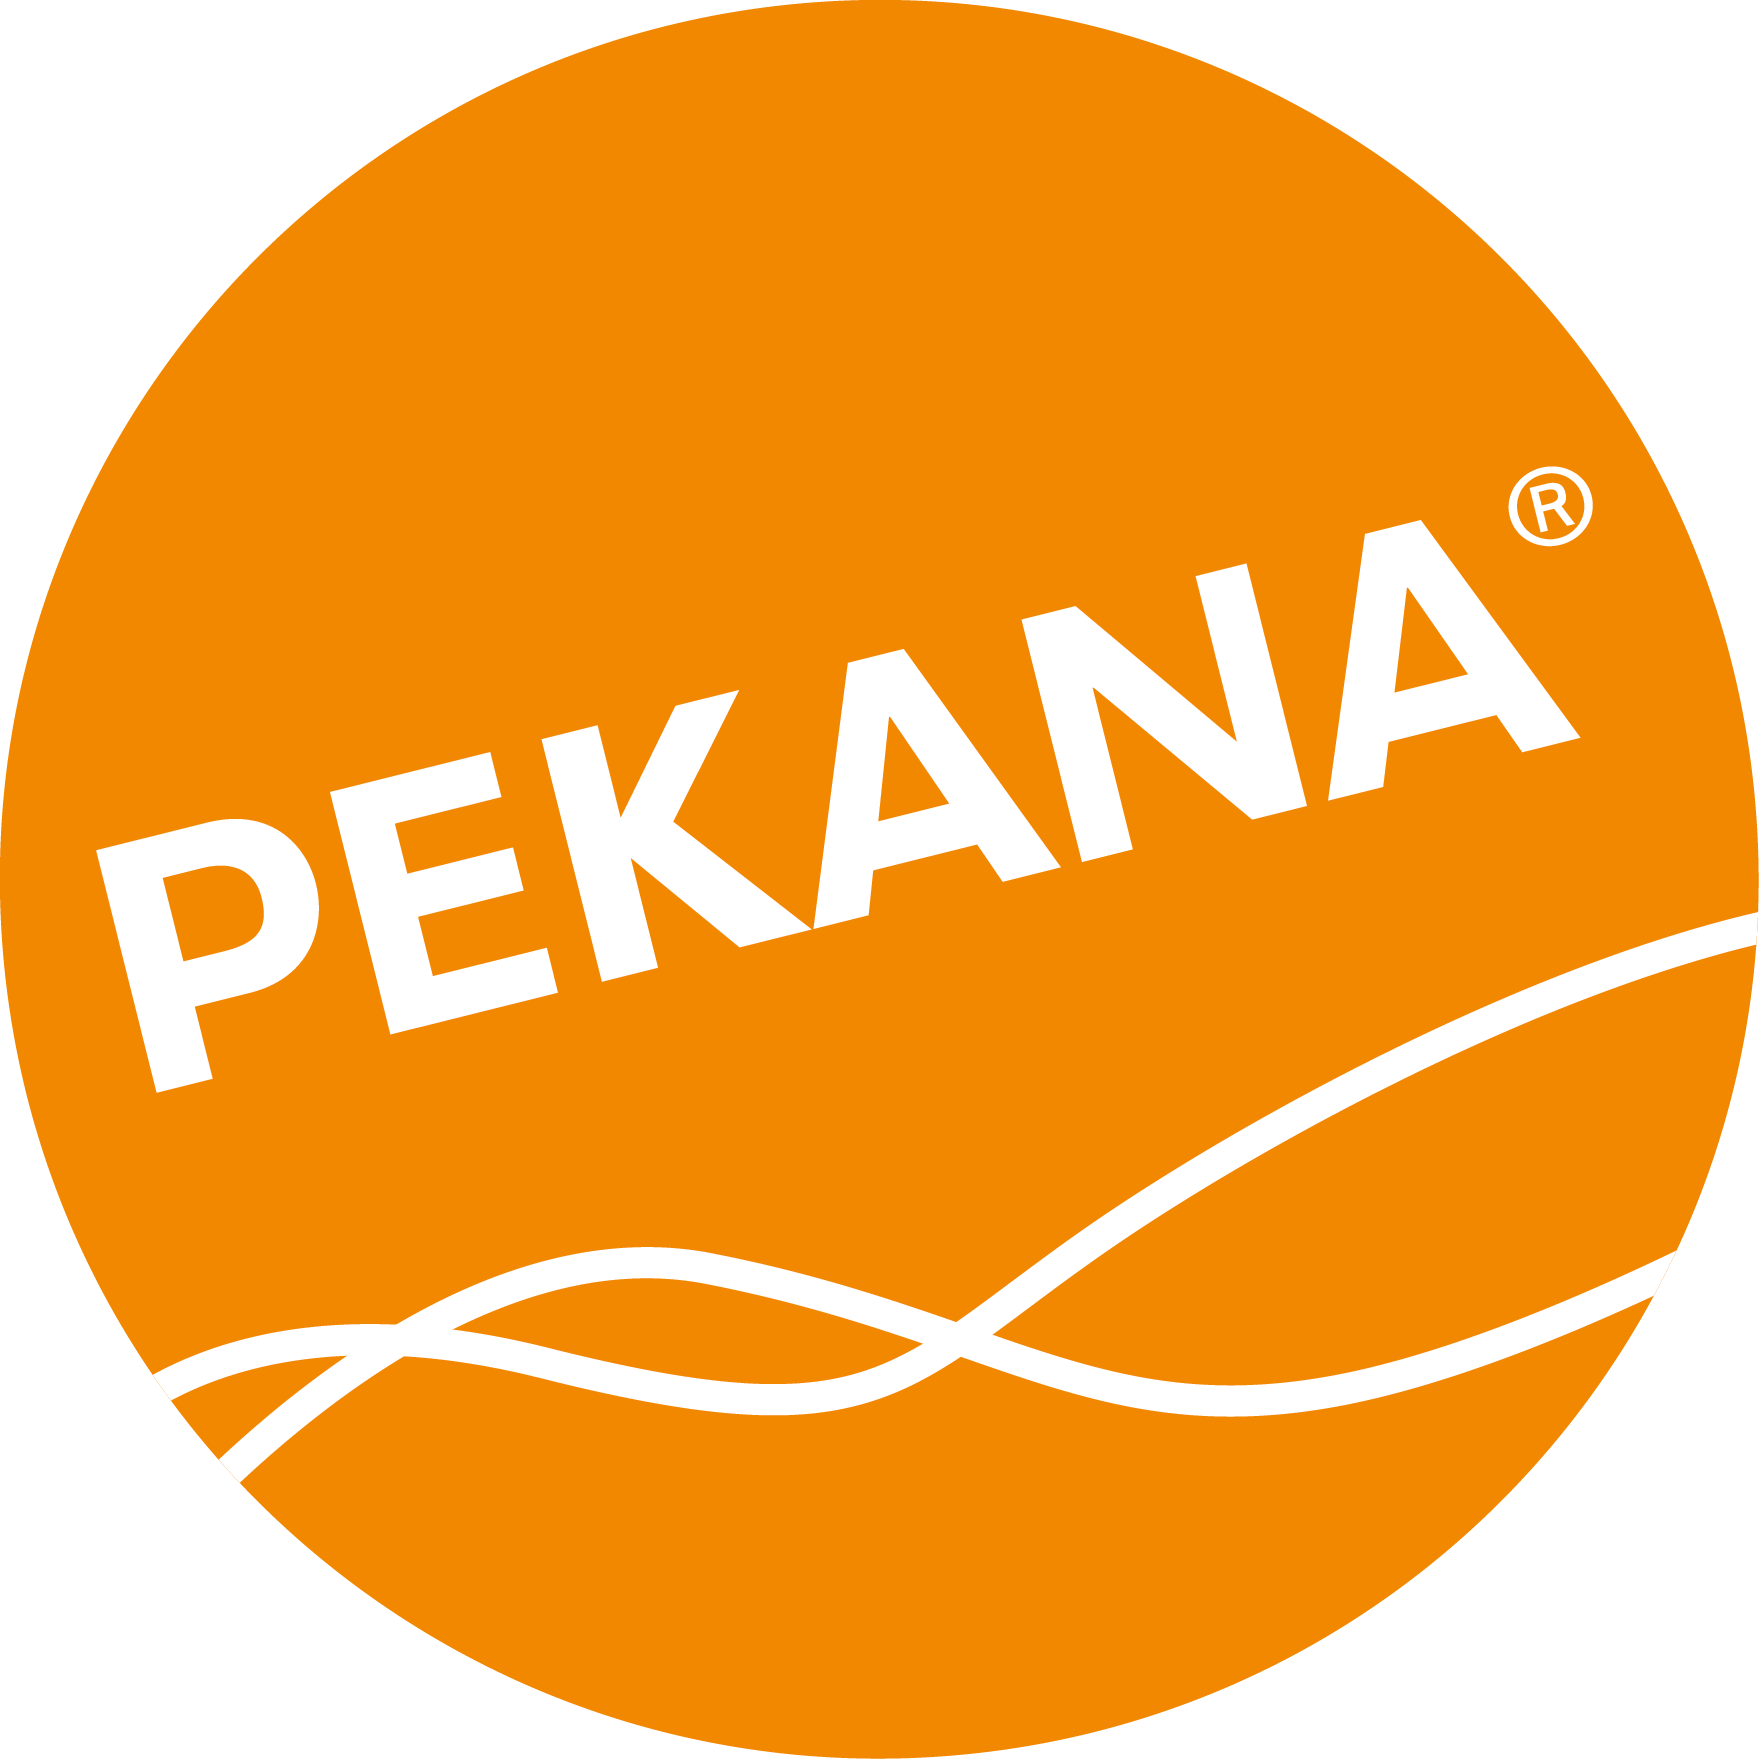 PEKANA logo